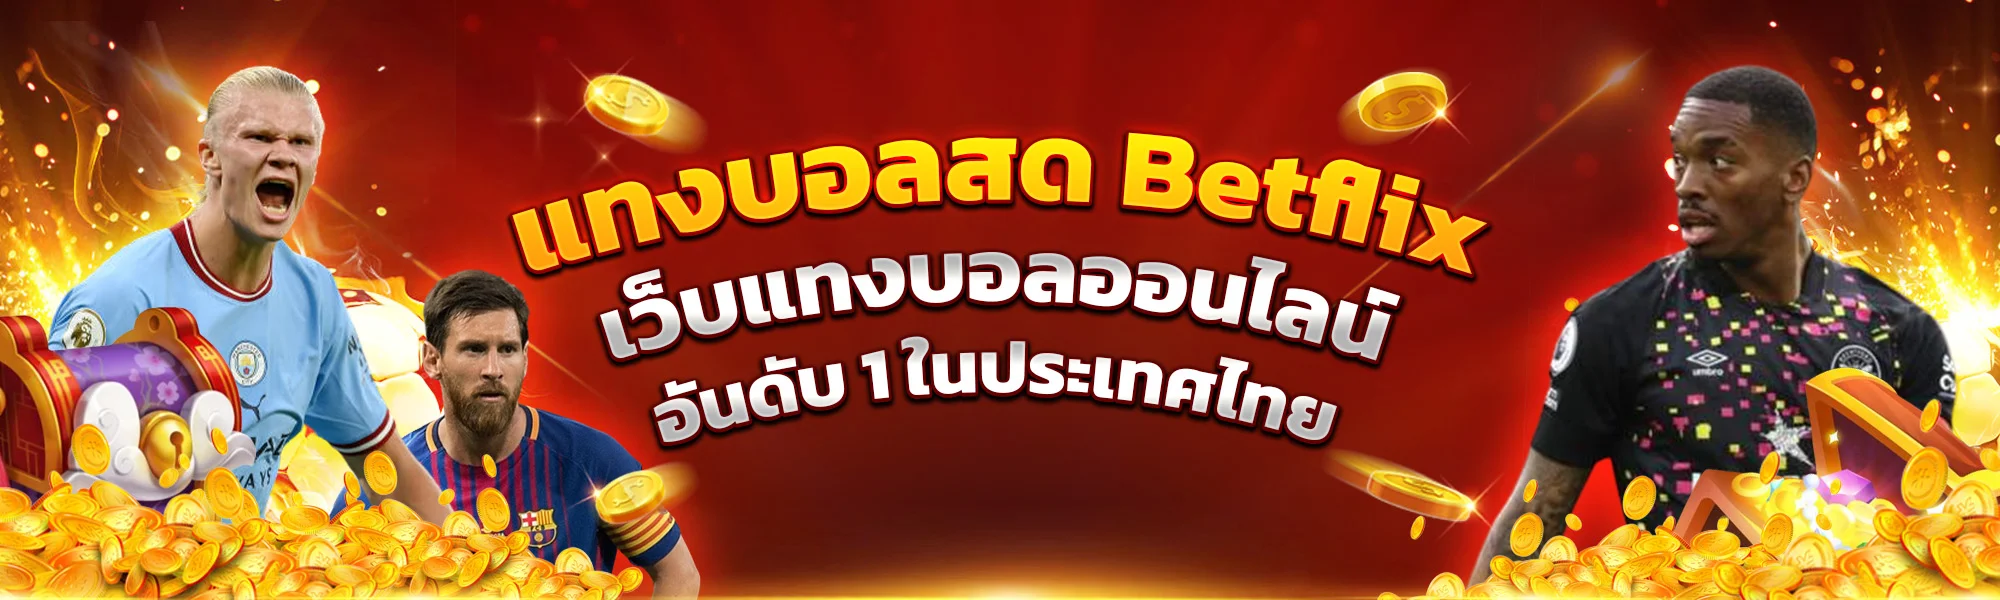 แทงบอลสด Betflix เว็บแทงบอลออนไลน์ อันดับ 1 ในประเทศไทย